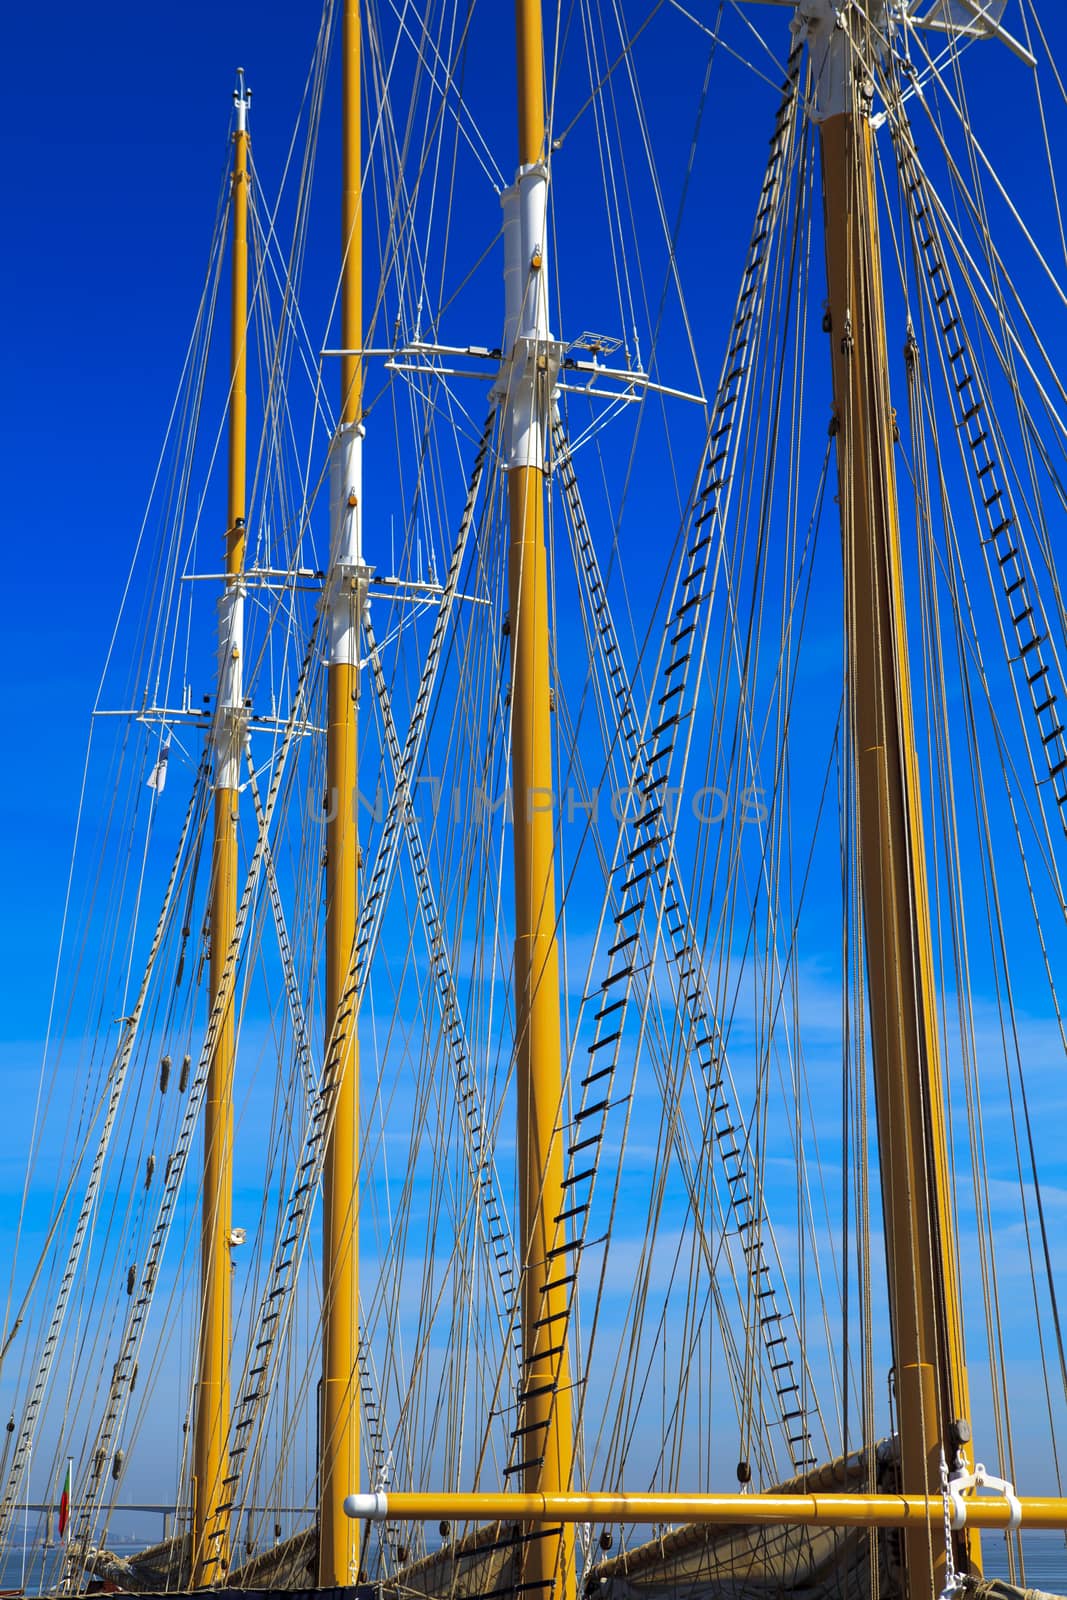 Yacht mast against blue summer sky